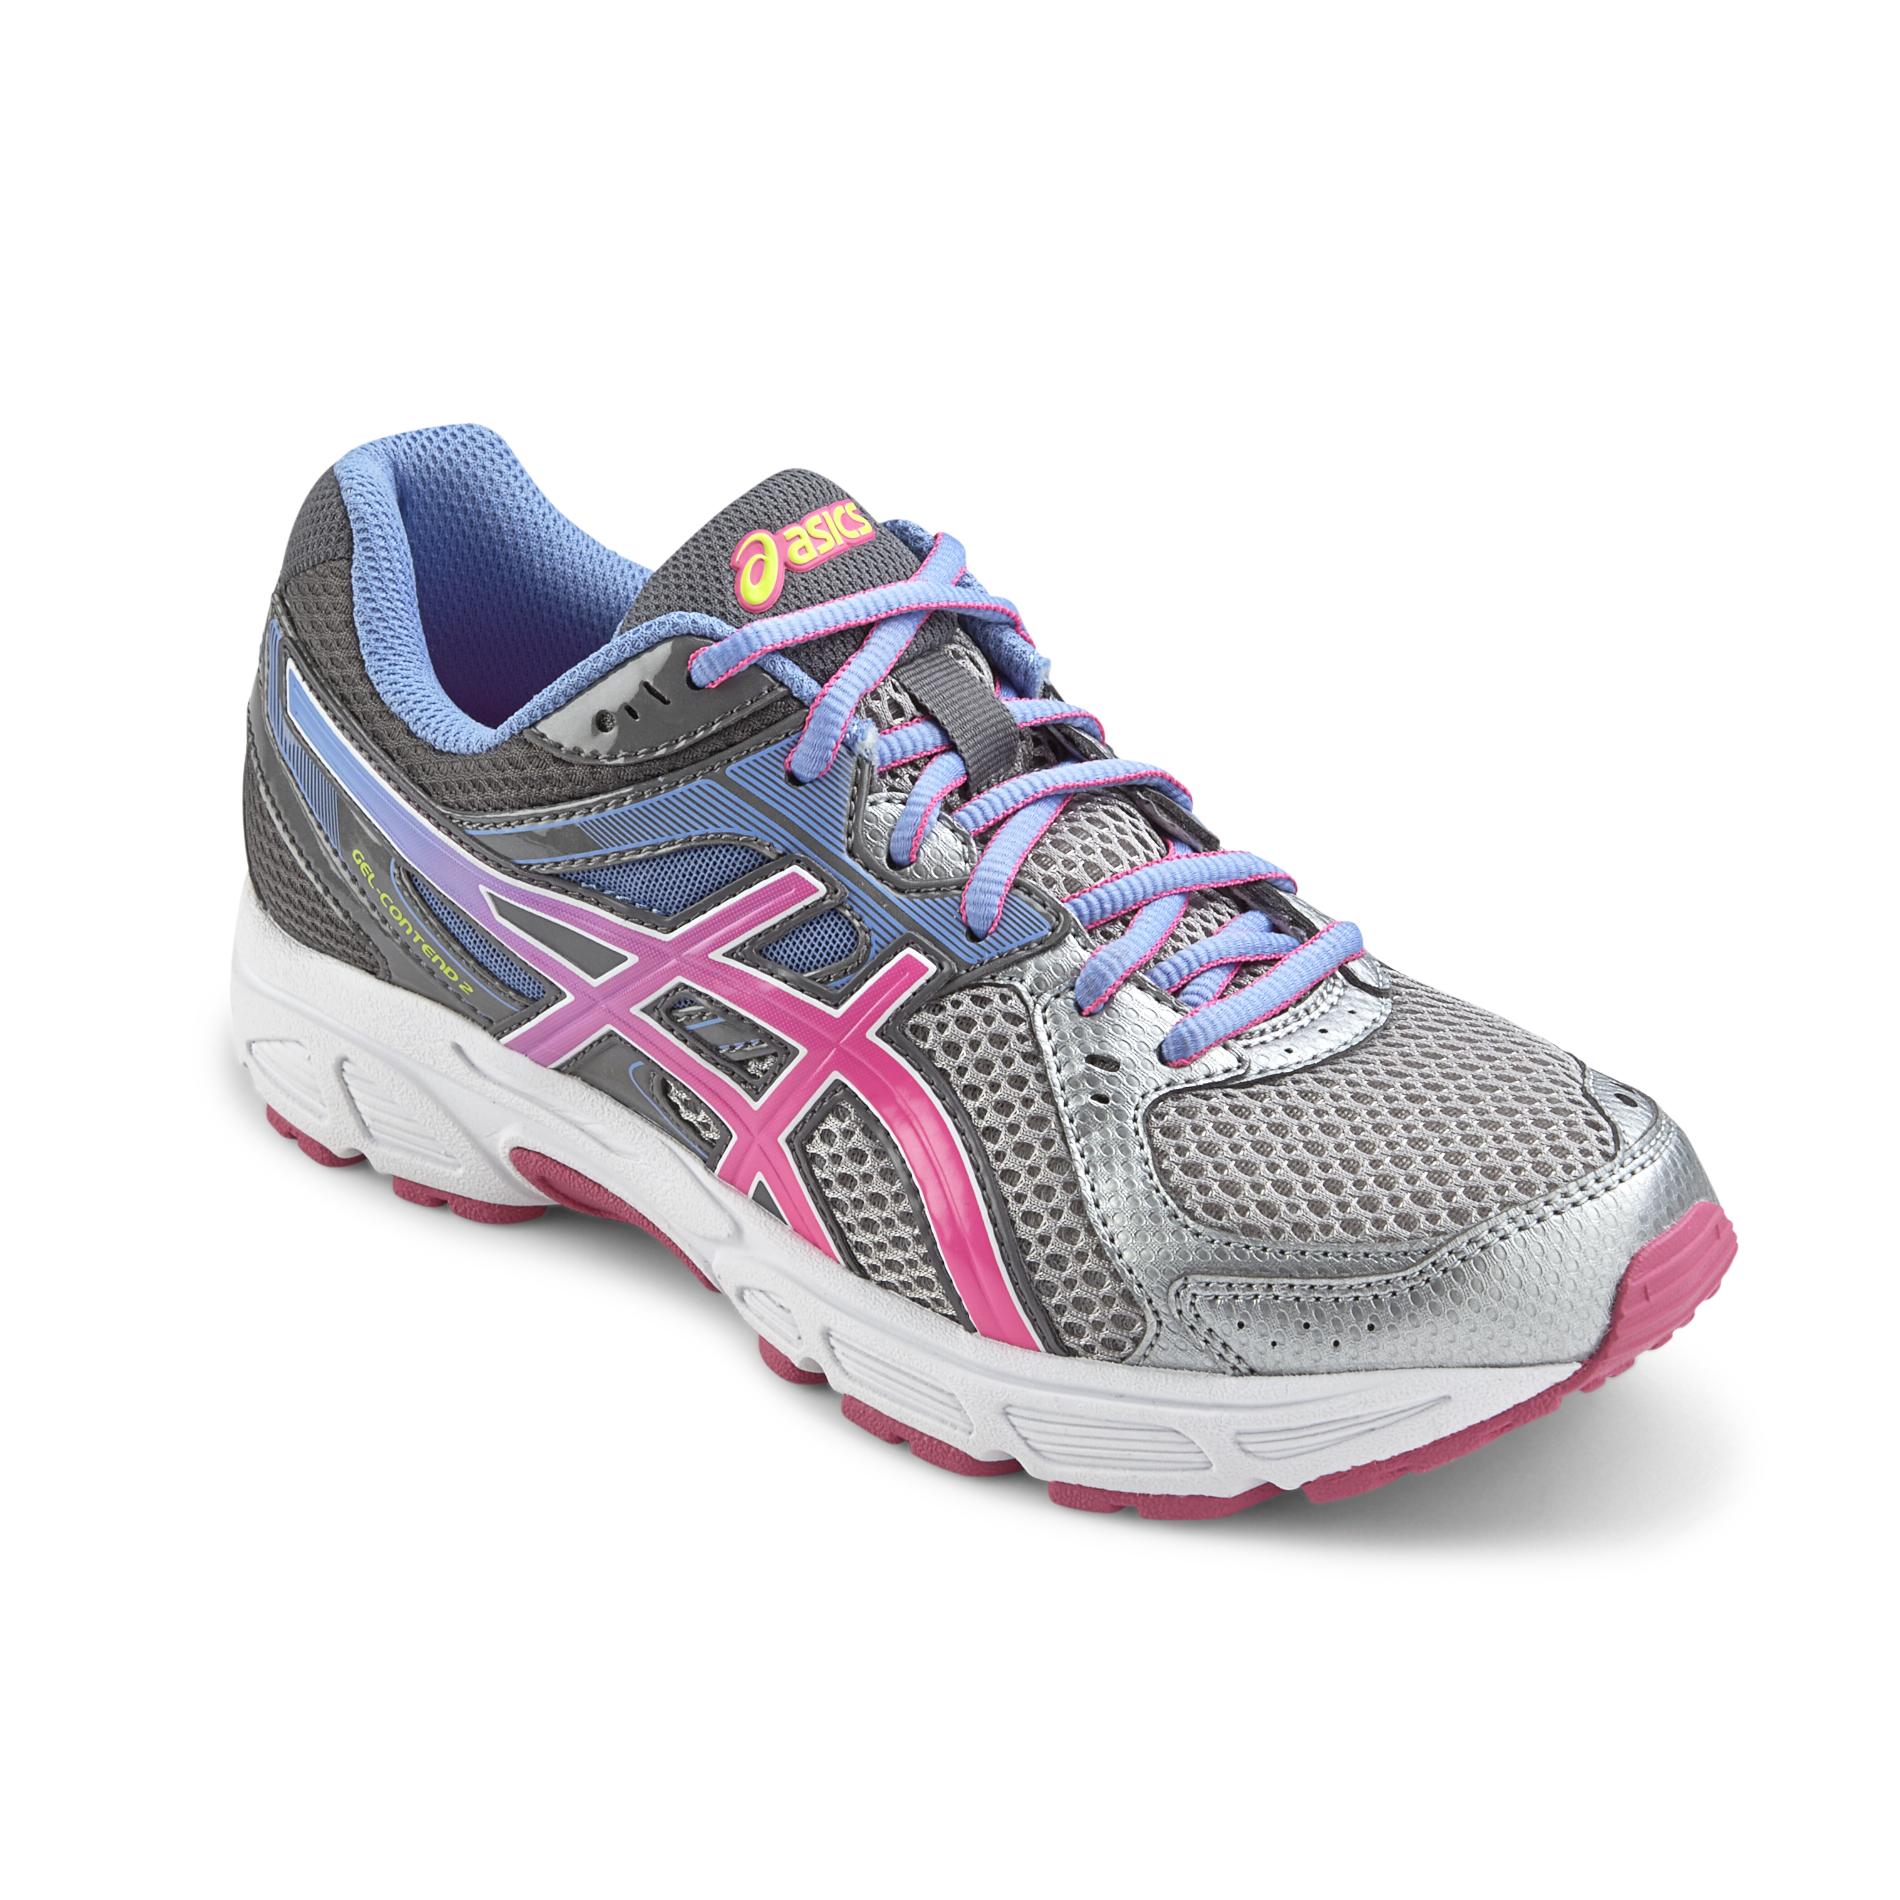 ASICS Women's GEL-Contend 2 Silver/Pink/Blue Running Shoe